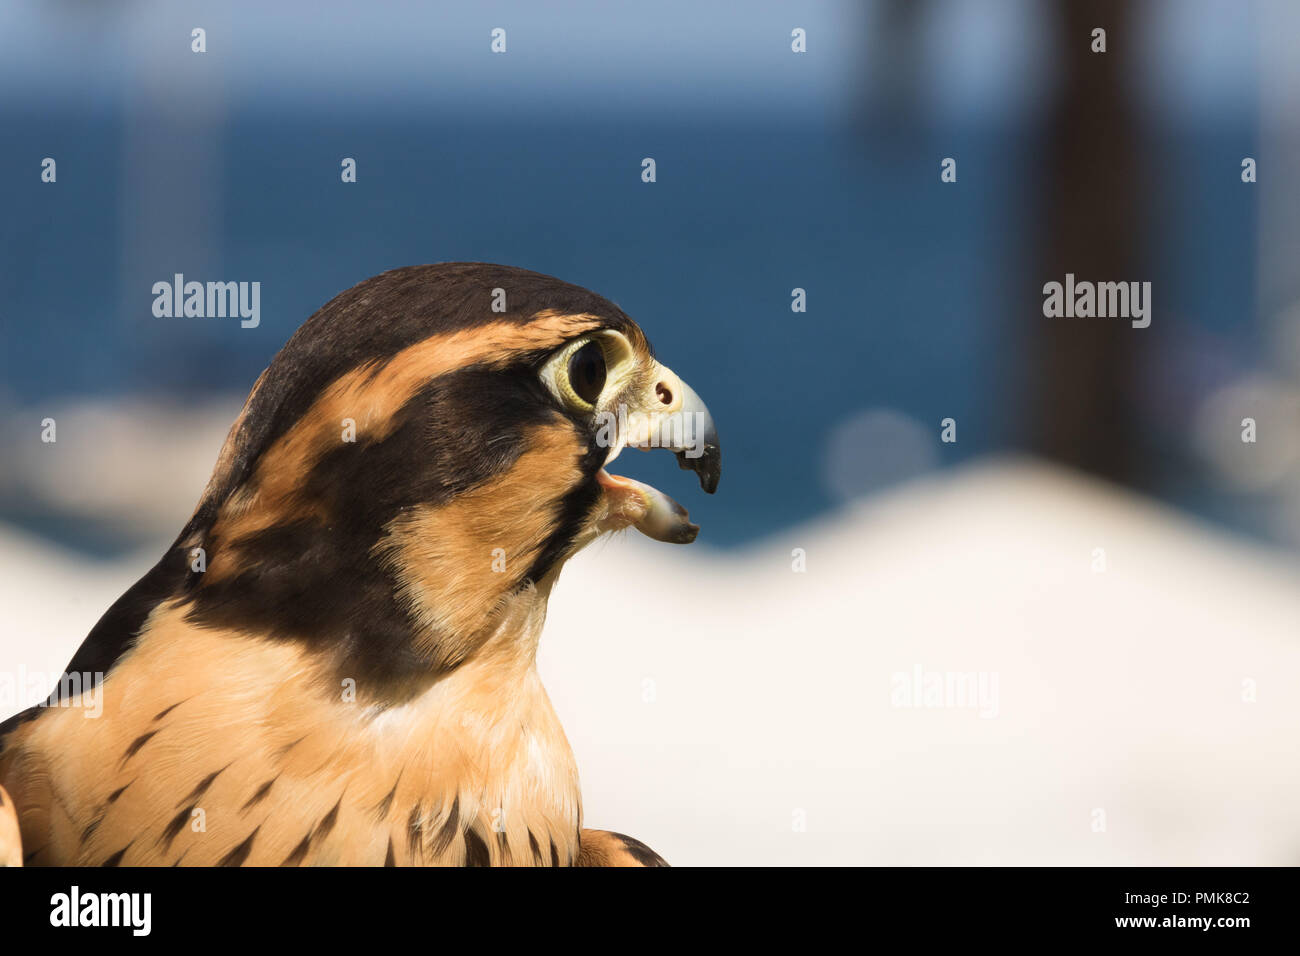 Peruanische Falcon ein aplomado, Nahaufnahme, Kopf geschossen von einem Raubvogel, einem Raptor mit braunen und goldenen Abzeichen auf Federn und dramatische schwarze Streifen aroun Stockfoto